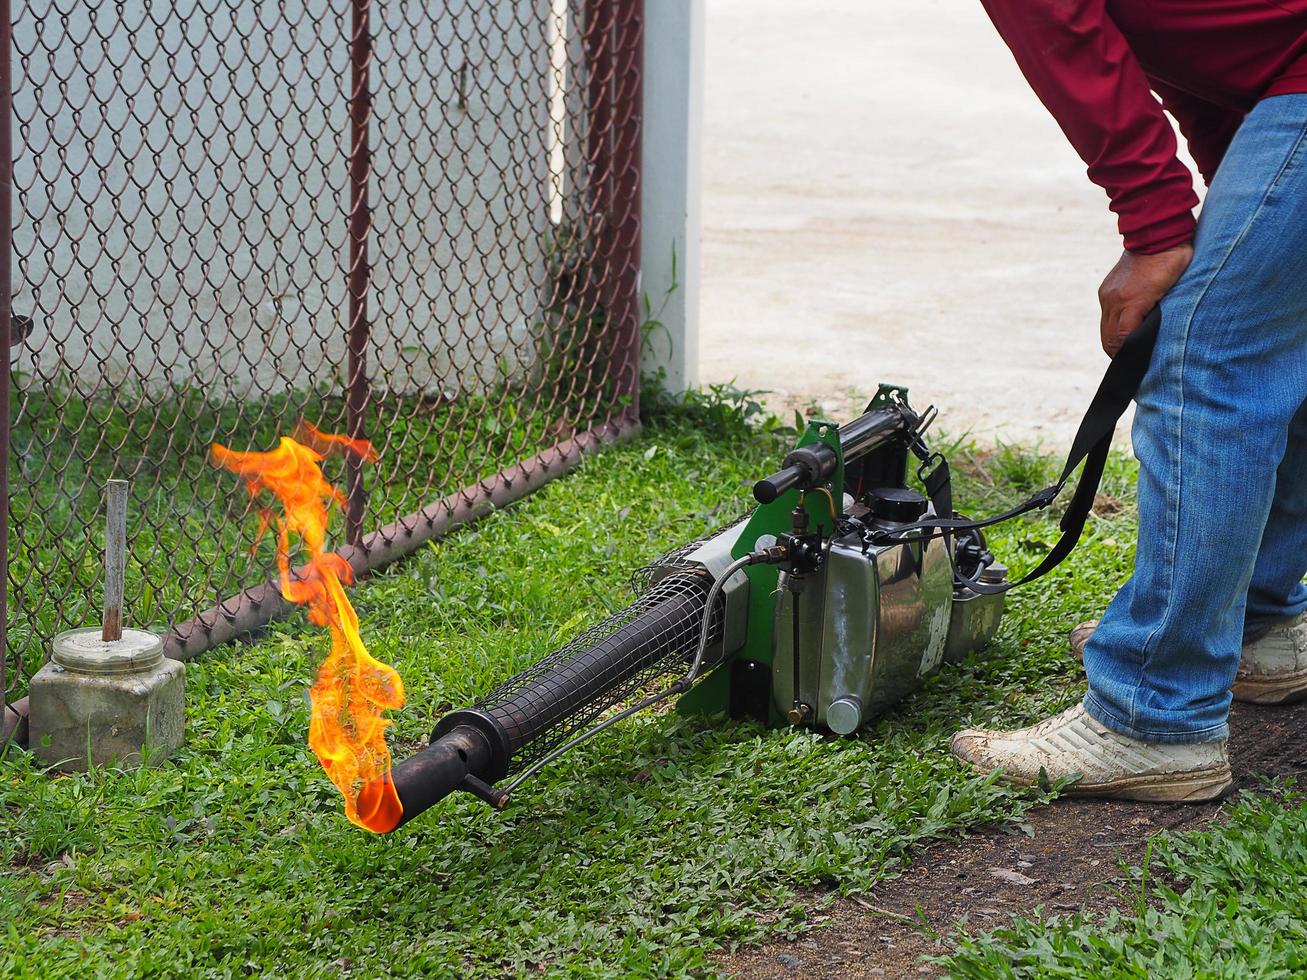 arbetare öppnar ett område för dimsprutning med bekämpningsmedel för att döda myggor foto